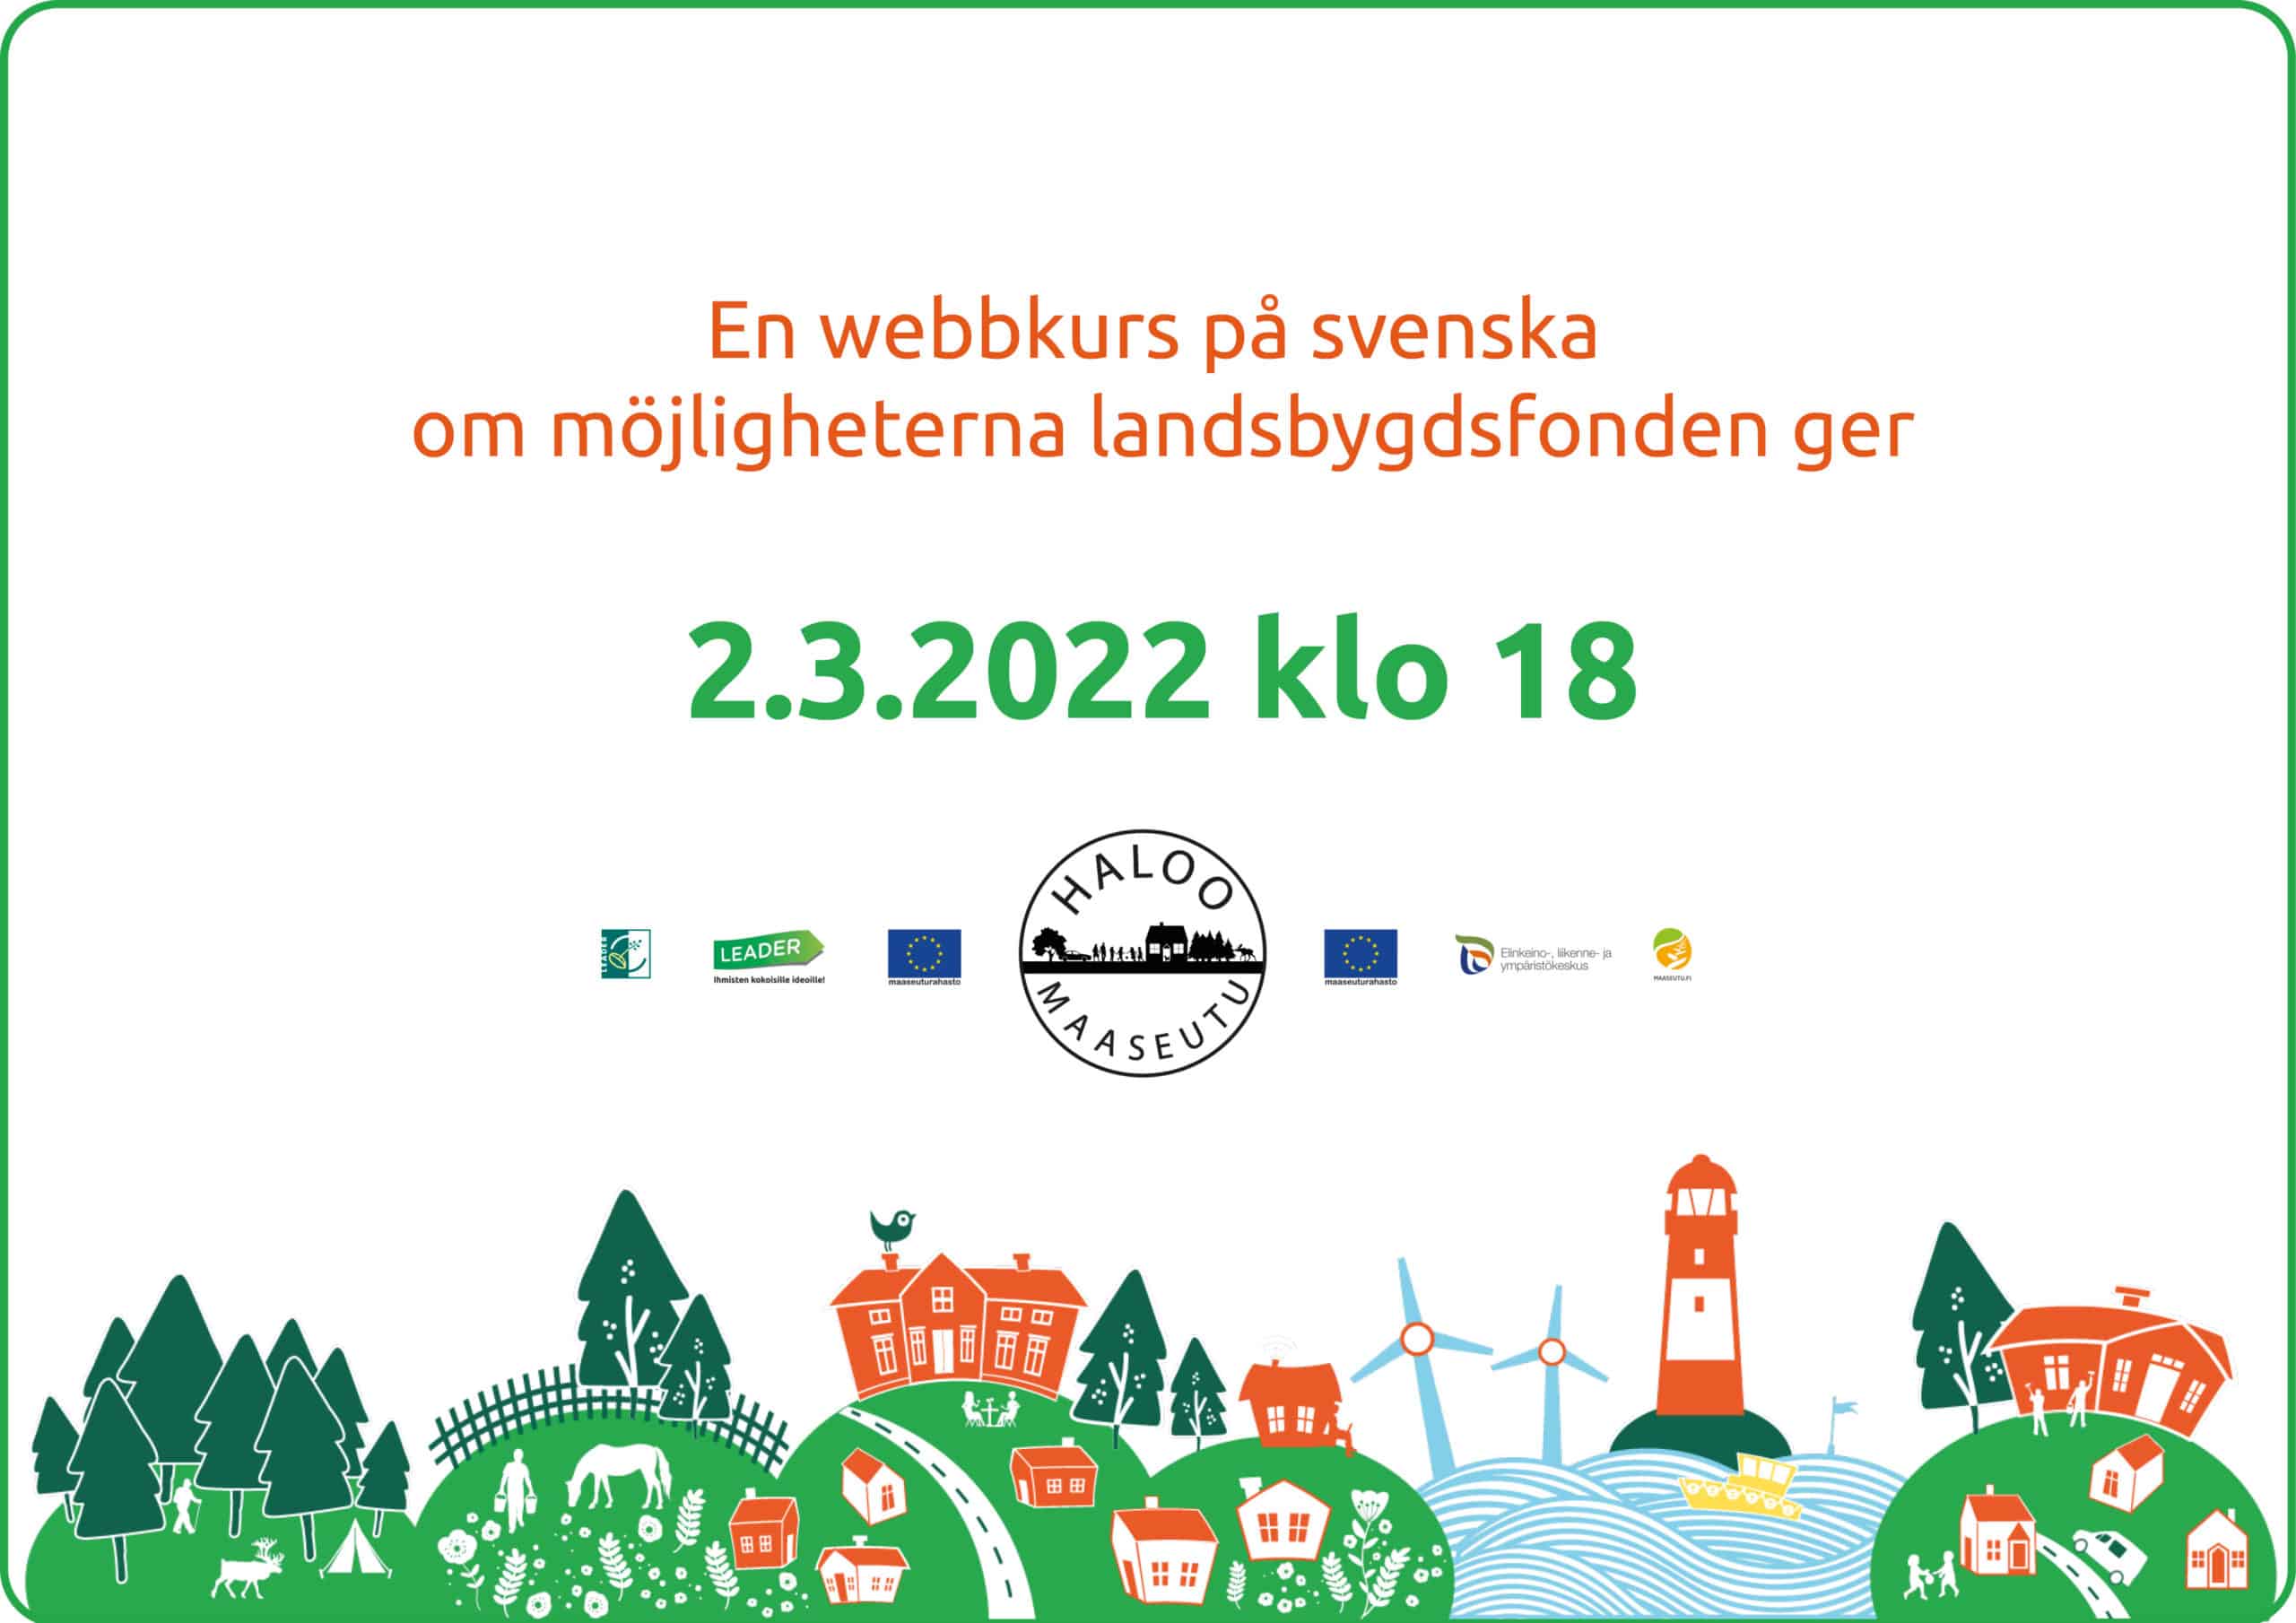 Utnyttja landsbygdsfonden fullt ut! En webbkurs på svenska 2.3.2022 om möjligheterna landsbygdsfonden ger